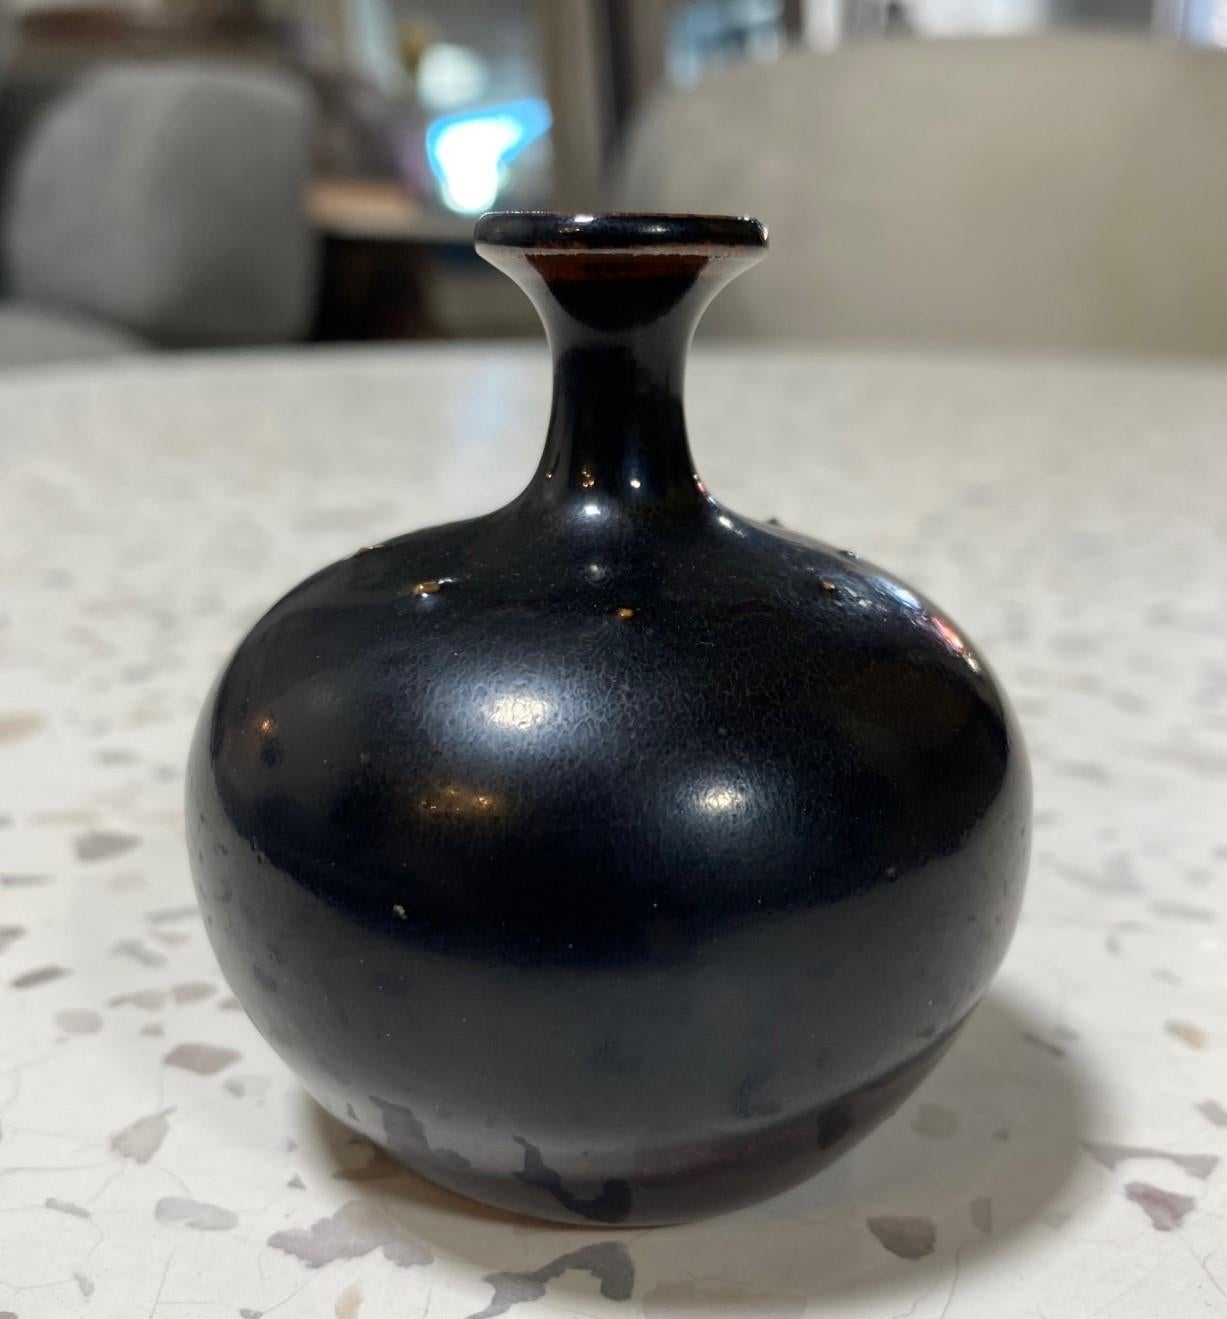 Un magnifique vase miniature à la glaçure sombre, réalisé par le maître céramiste/designer suédois Rolf Palm pour Mölle, Suède.  Cette pierre précieuse présente une forme classique avec de minuscules épines et une riche glaçure qui rayonne et change